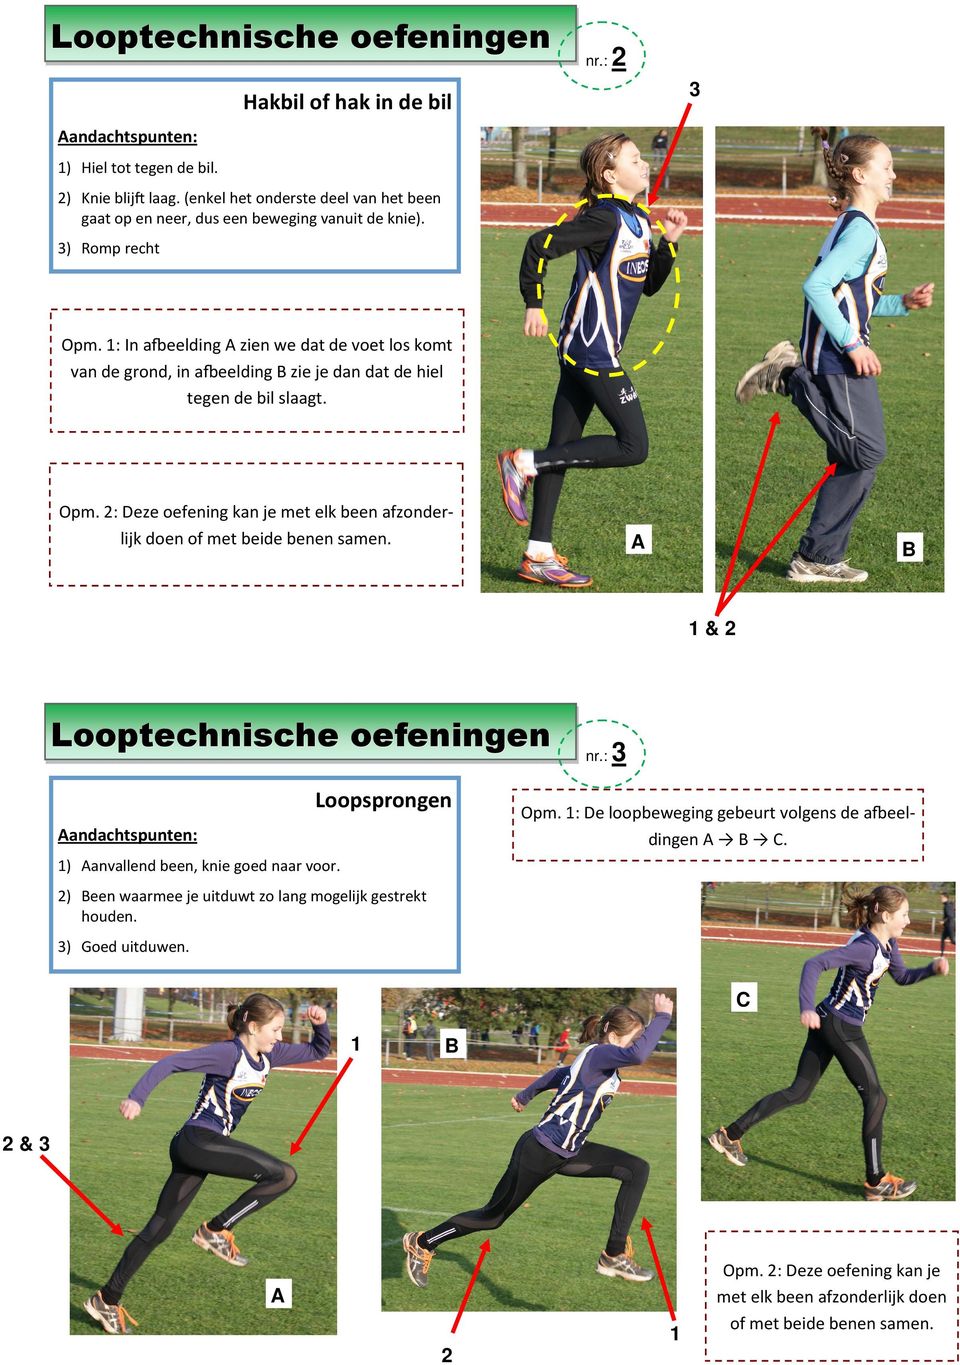 A B & Loopsprongen Opm. : De loopbeweging gebeurt volgens de aeeldingen A B C. ) Aanvallend been, knie goed naar voor.